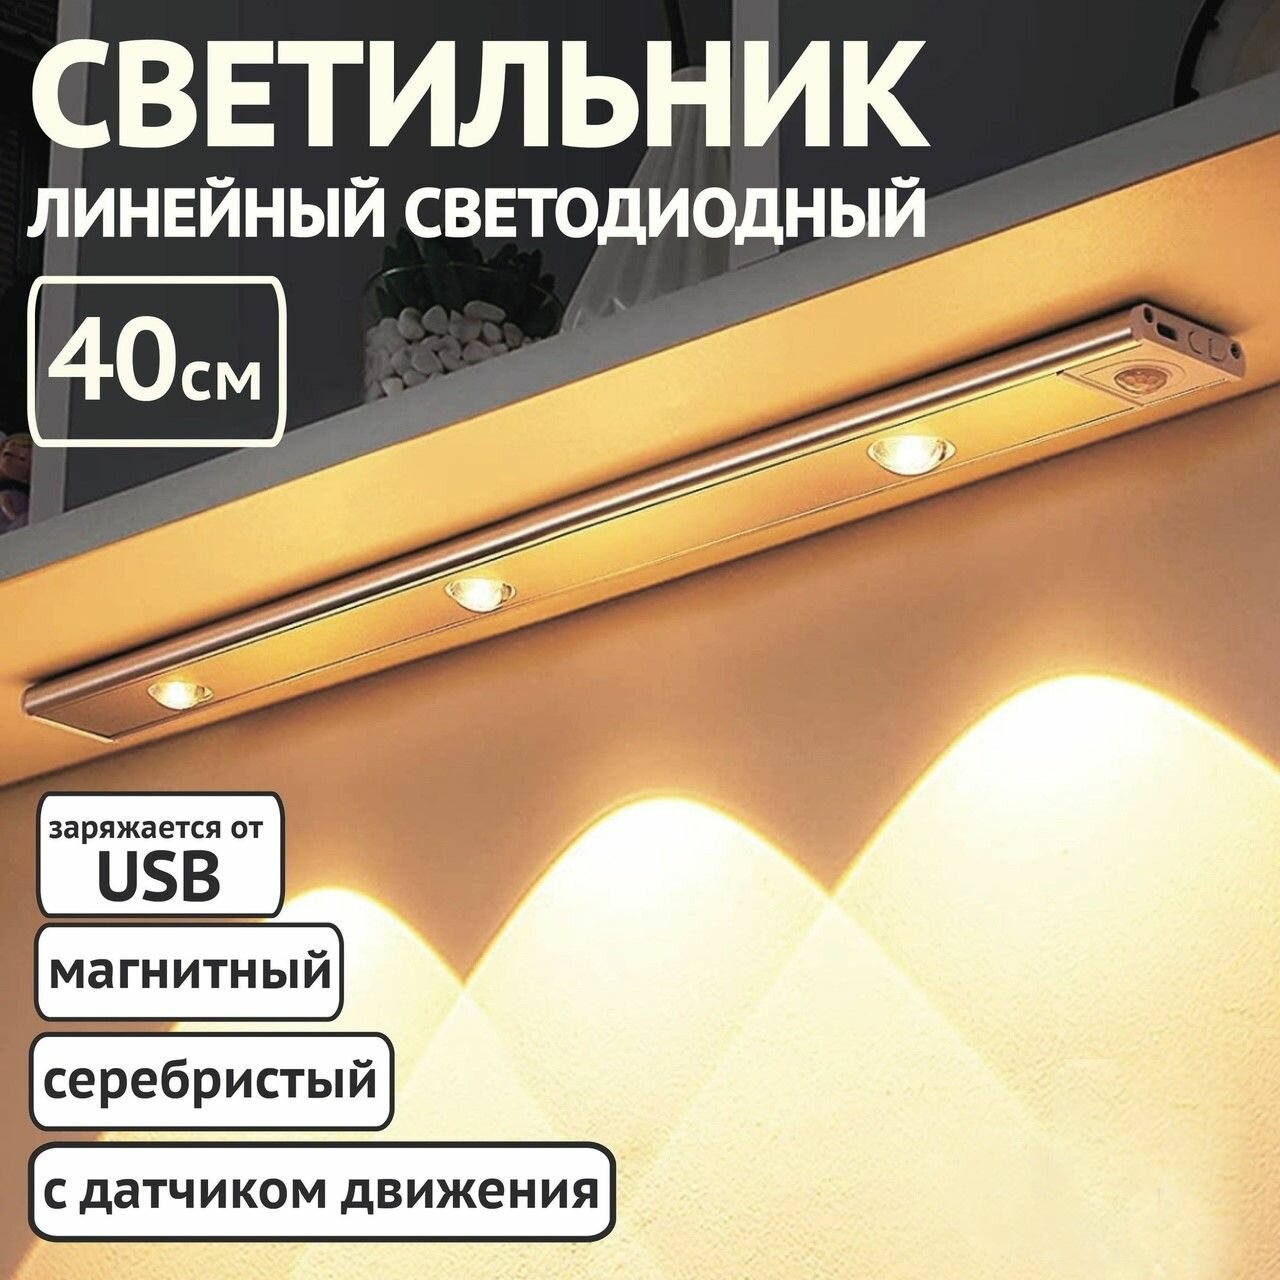 Cветильник с датчиком движения. Беспроводной ночник с USB зарядкой. Светодиодная подсветка для кухни/прихожей/комнаты подвесная. Потолочная лампа. IkoloL